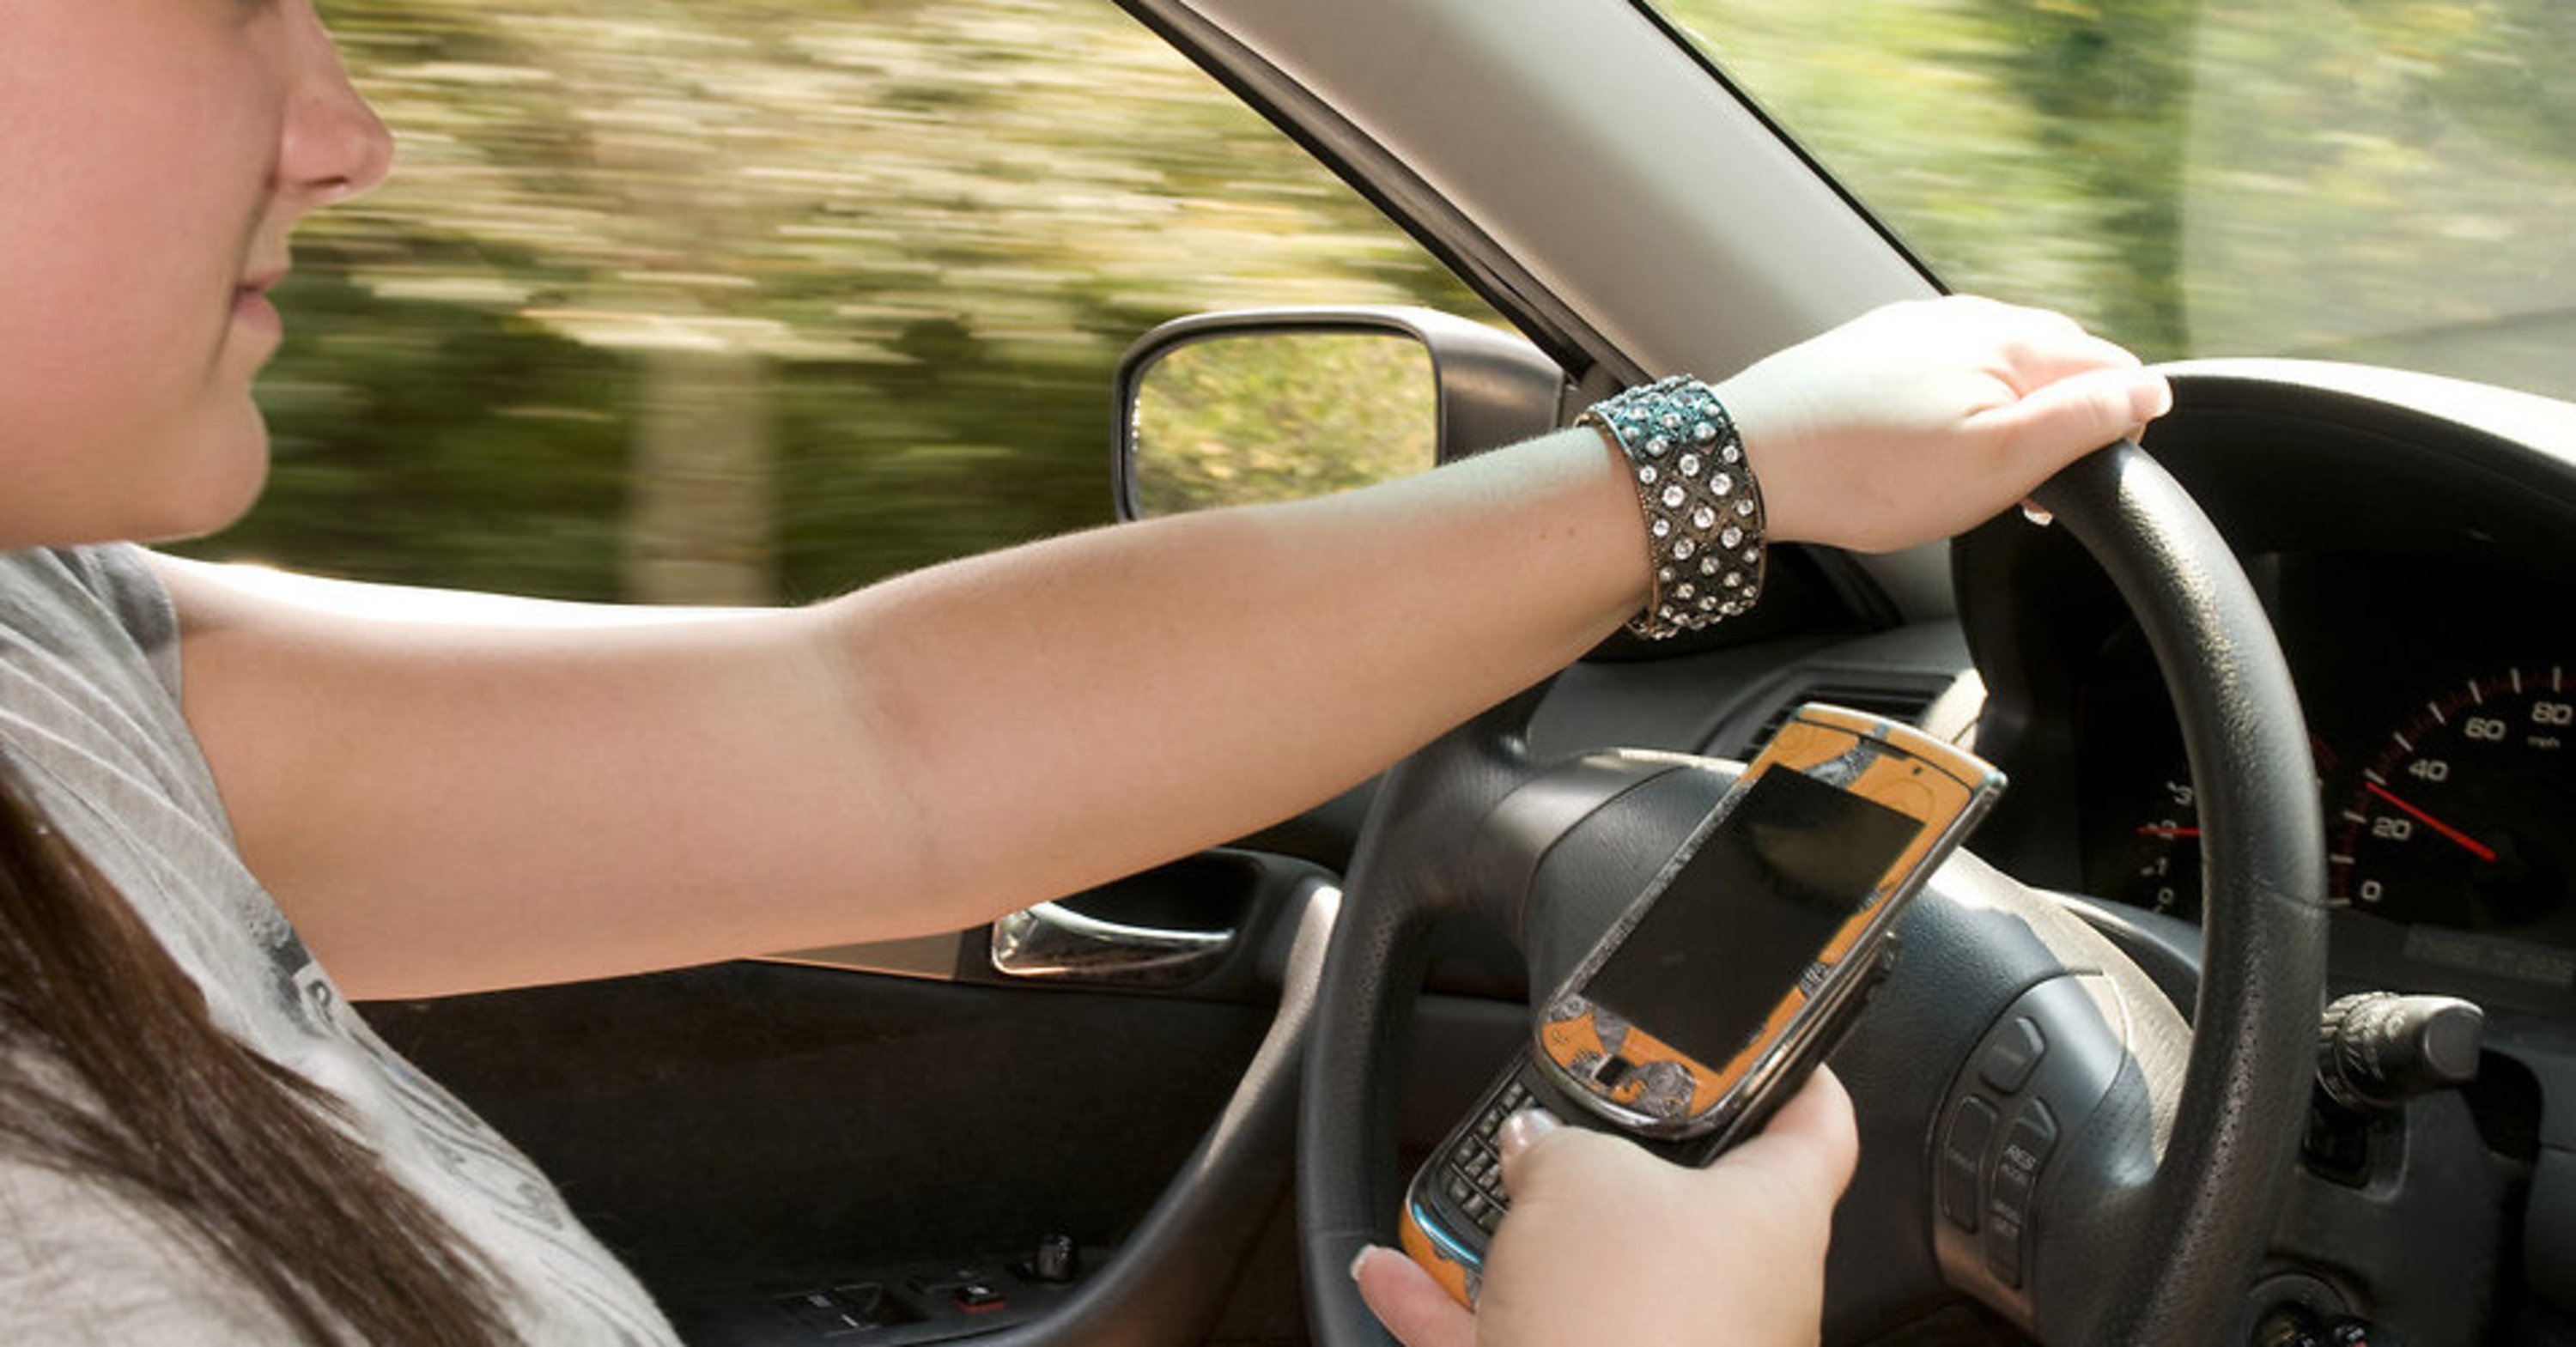 Riforma CdS, Telefonino cellulare e Tablet in auto: basta Smartphone mentre si guida?